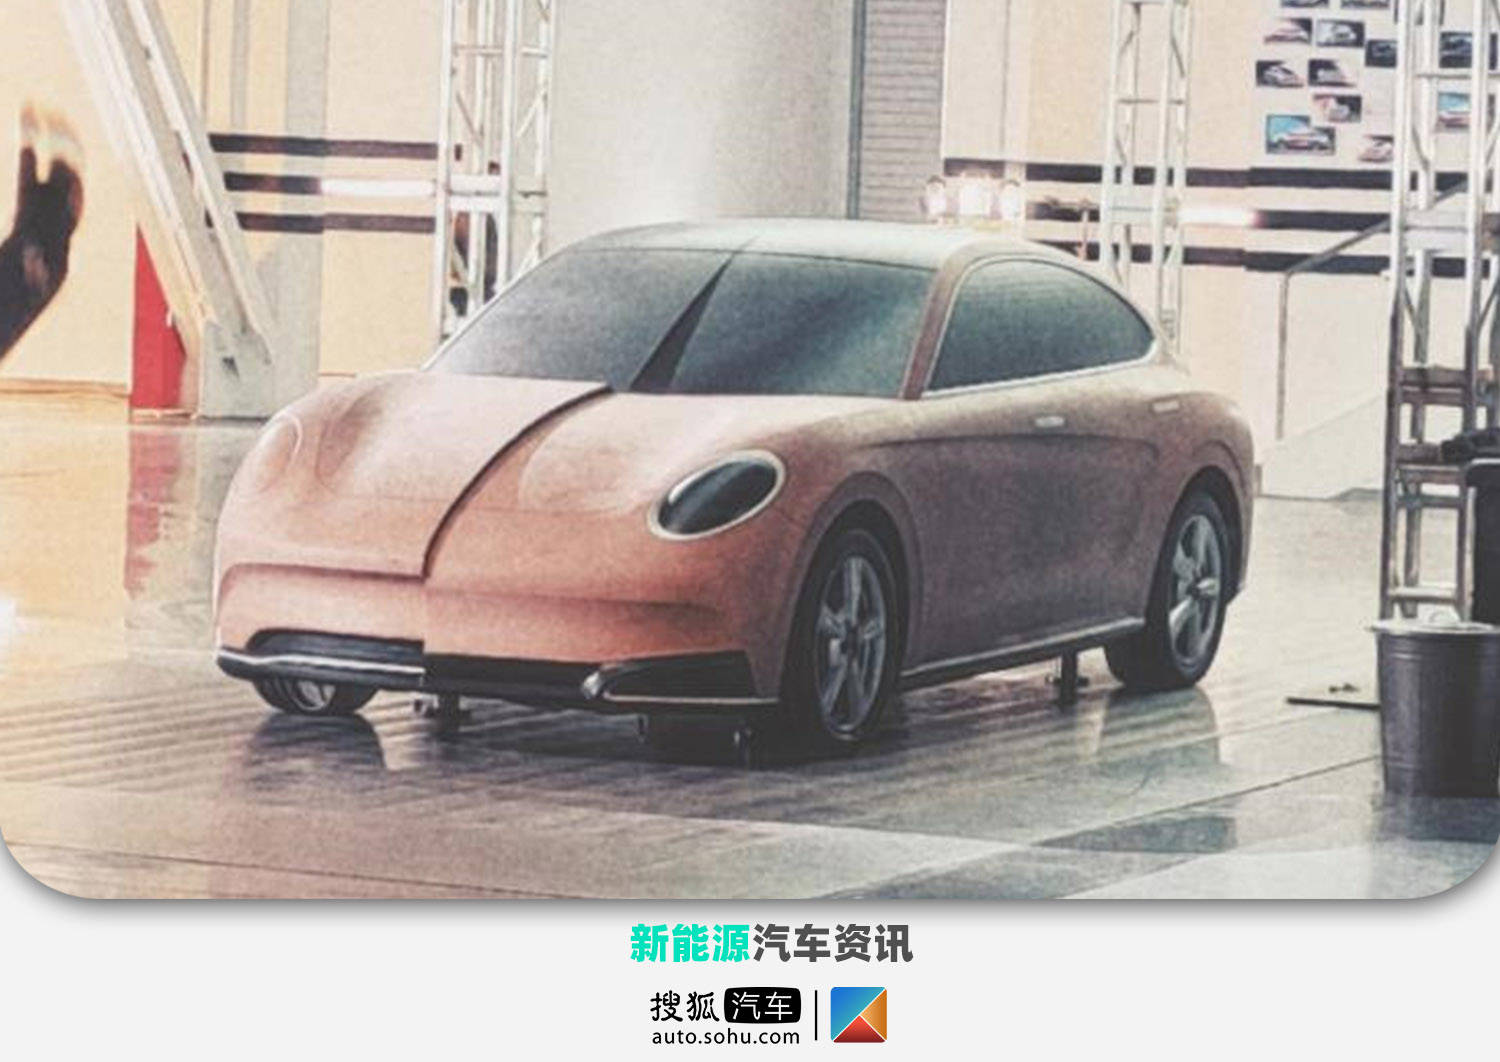 欧拉闪电猫首次曝光将于上海车展亮相 新车